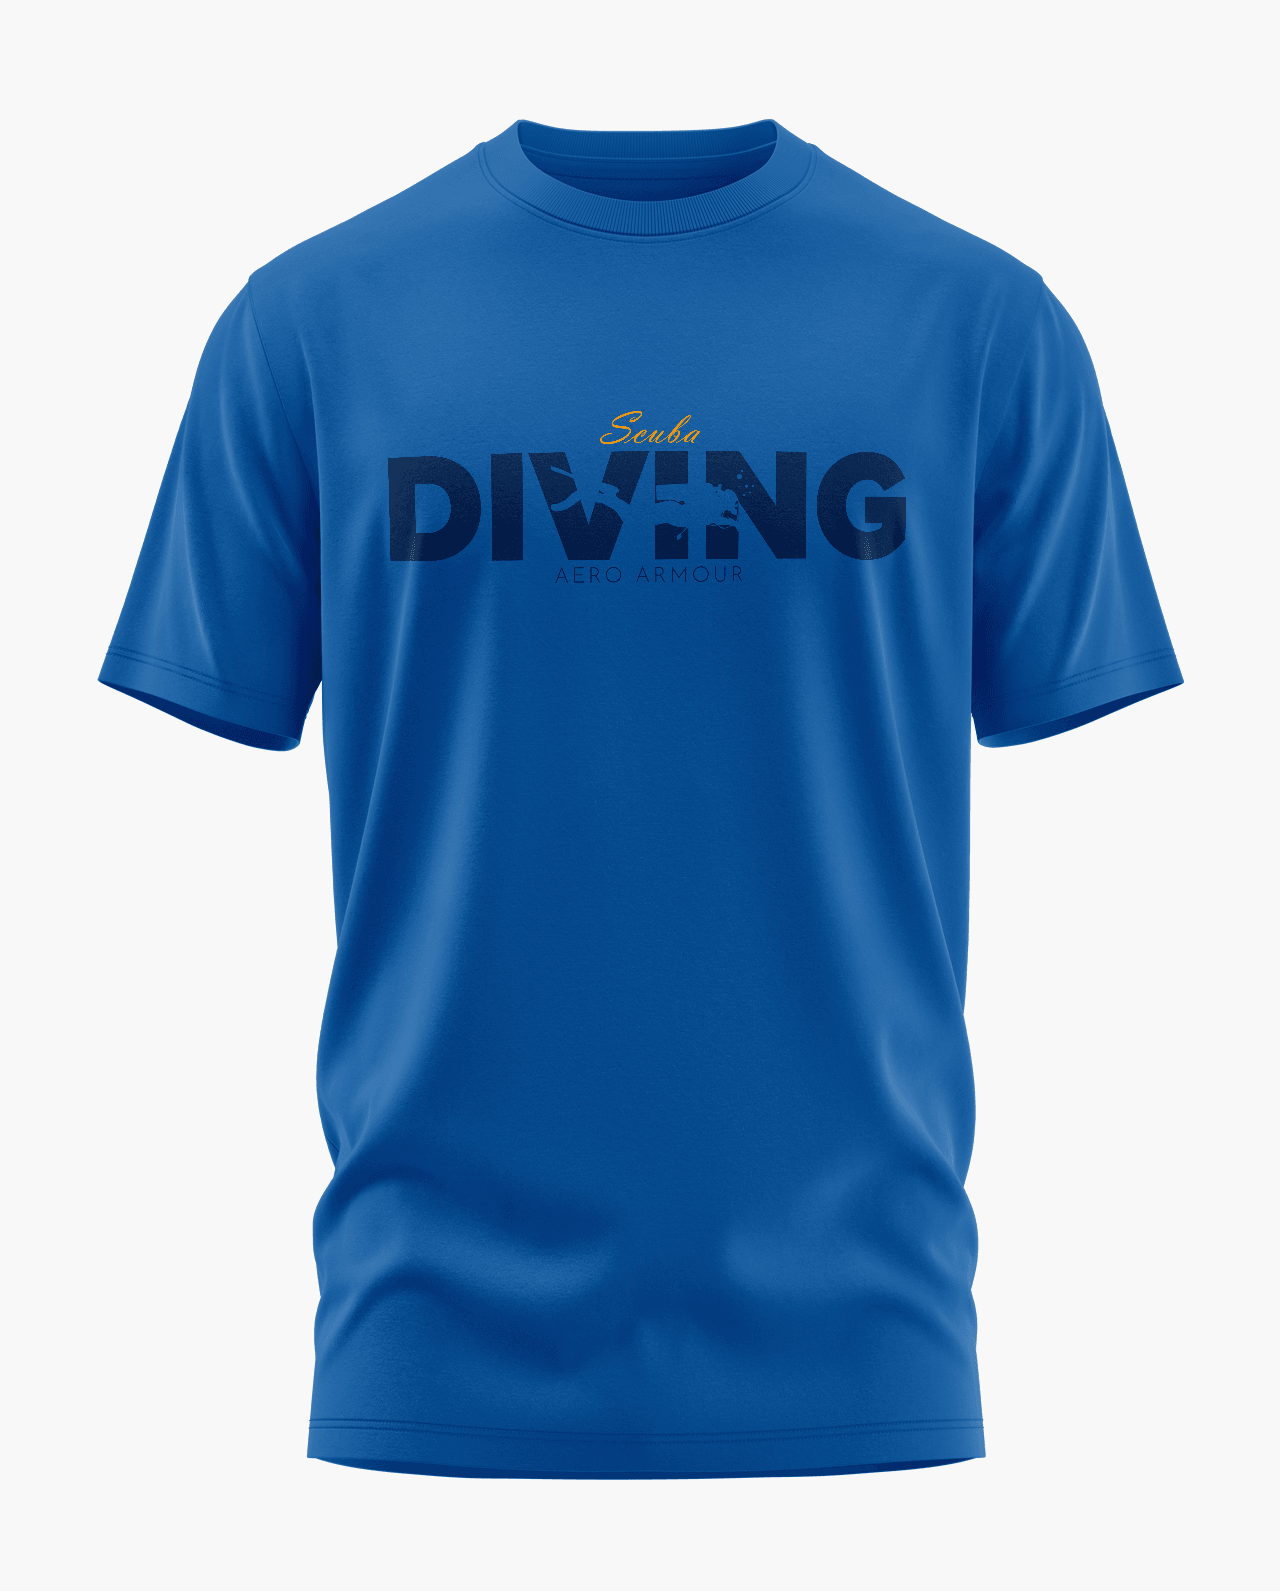 Deep Dive T-Shirt - Aero Armour